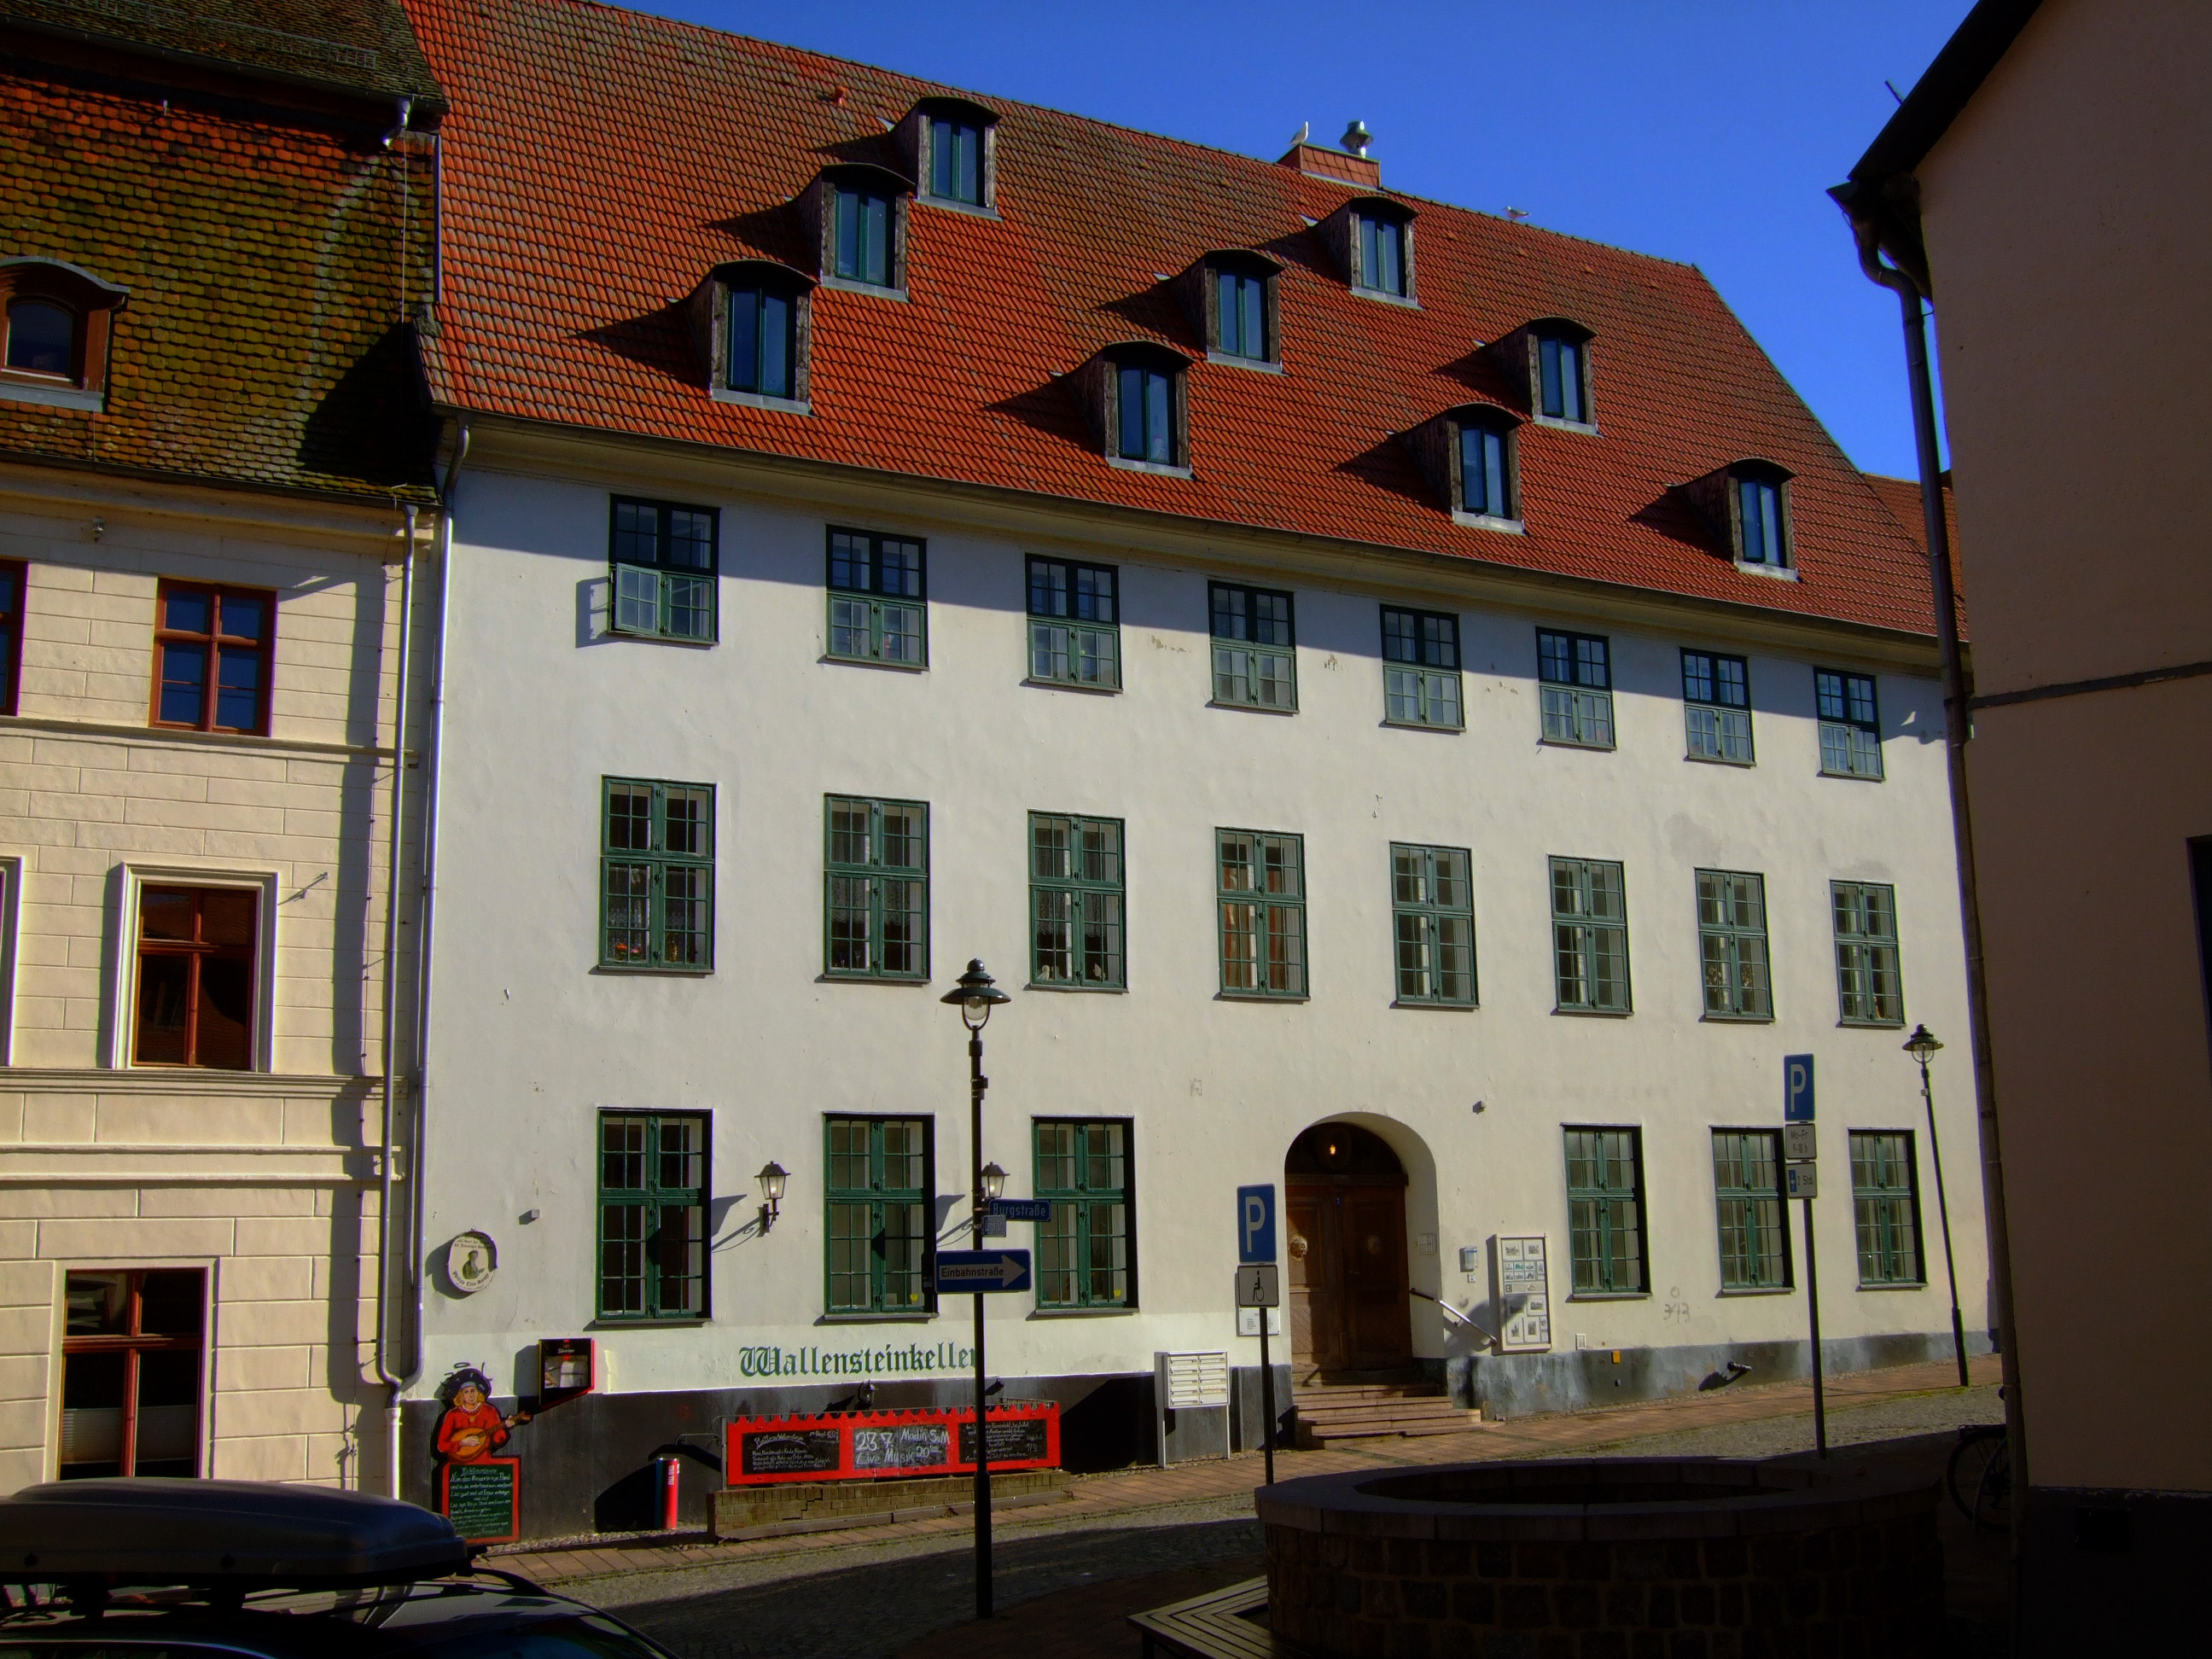 Rechtsanwaltskanzlei Hertzsch in der Burgstraße 7 in der Wolgaster Altstadt